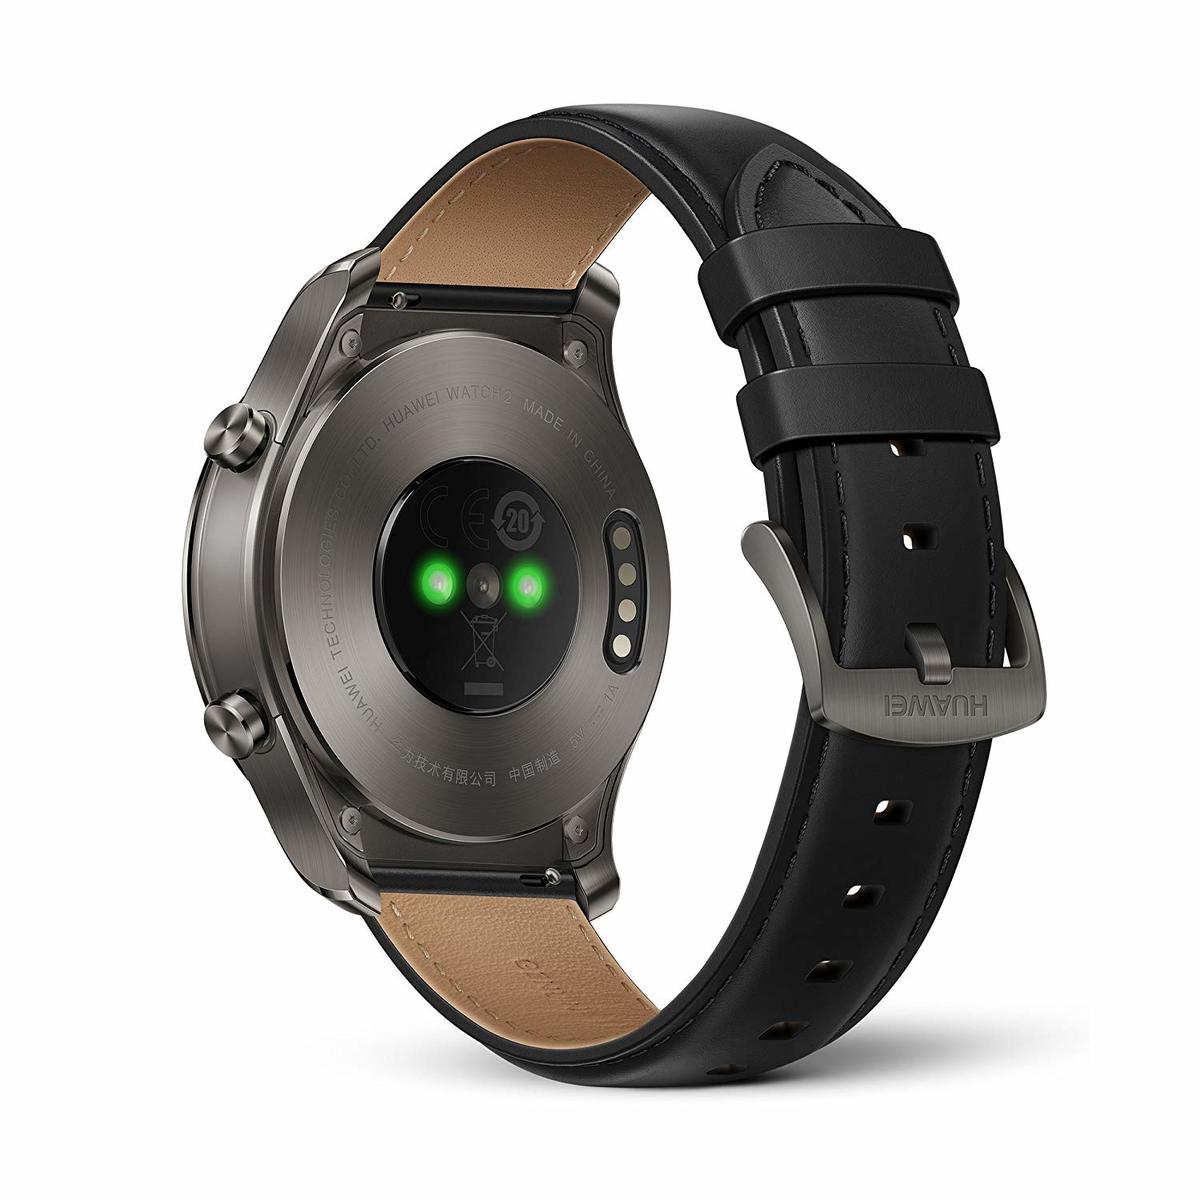 Huawei Smart Watch 2 Classic +Smart Band A1